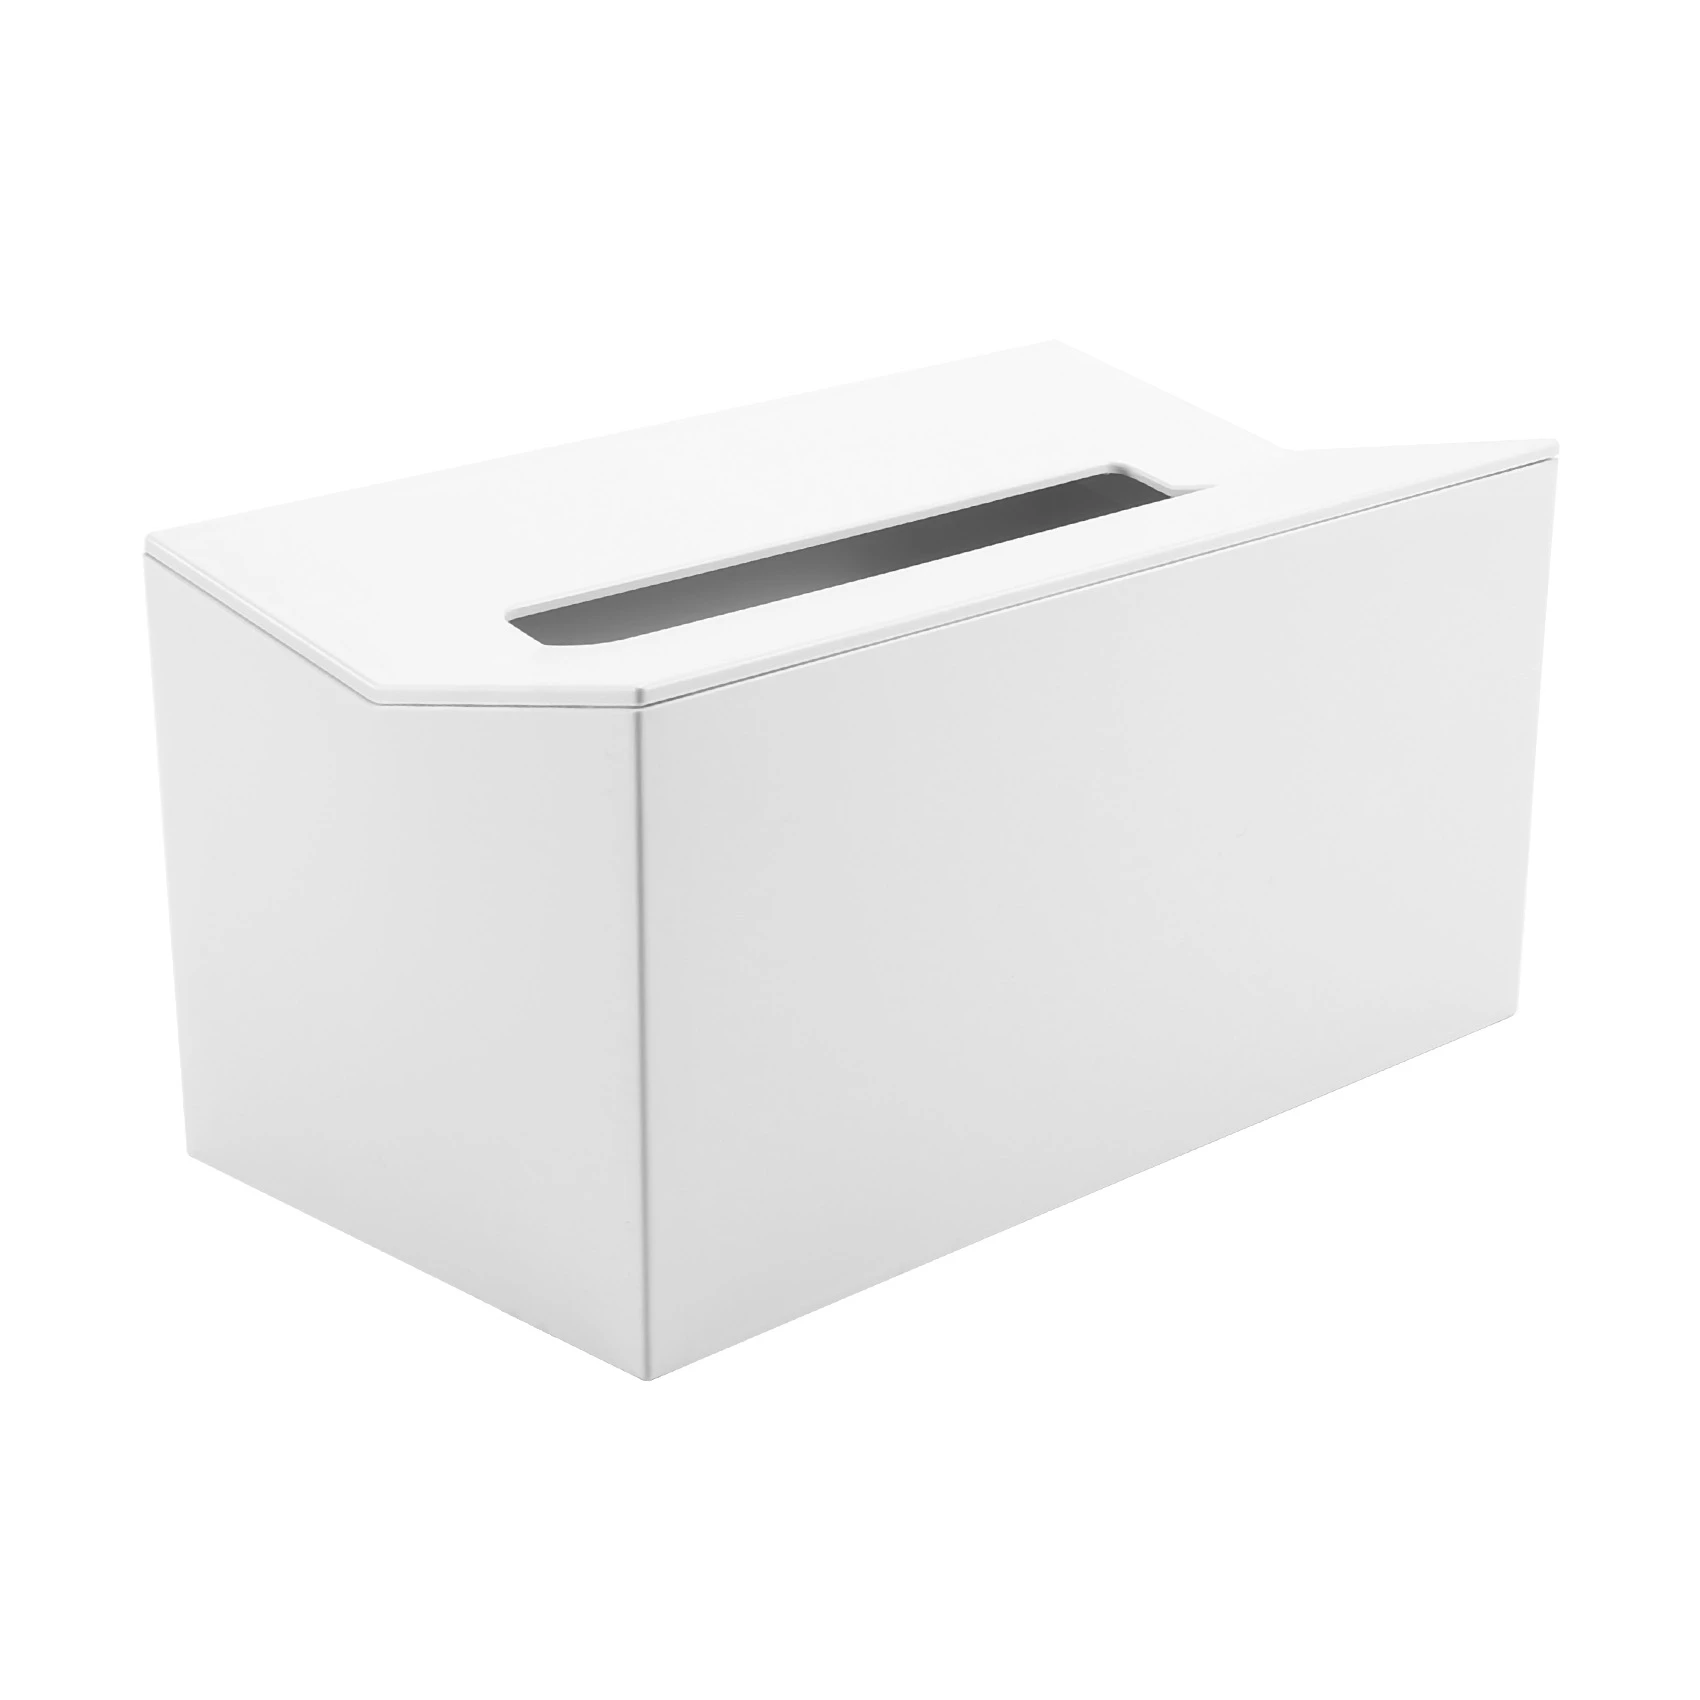 

Кухонная коробка для салфеток, крышка, держатель для салфеток, для бумажных салфеток, диспенсер для салфеток, настенный контейнер для салфеток, белый